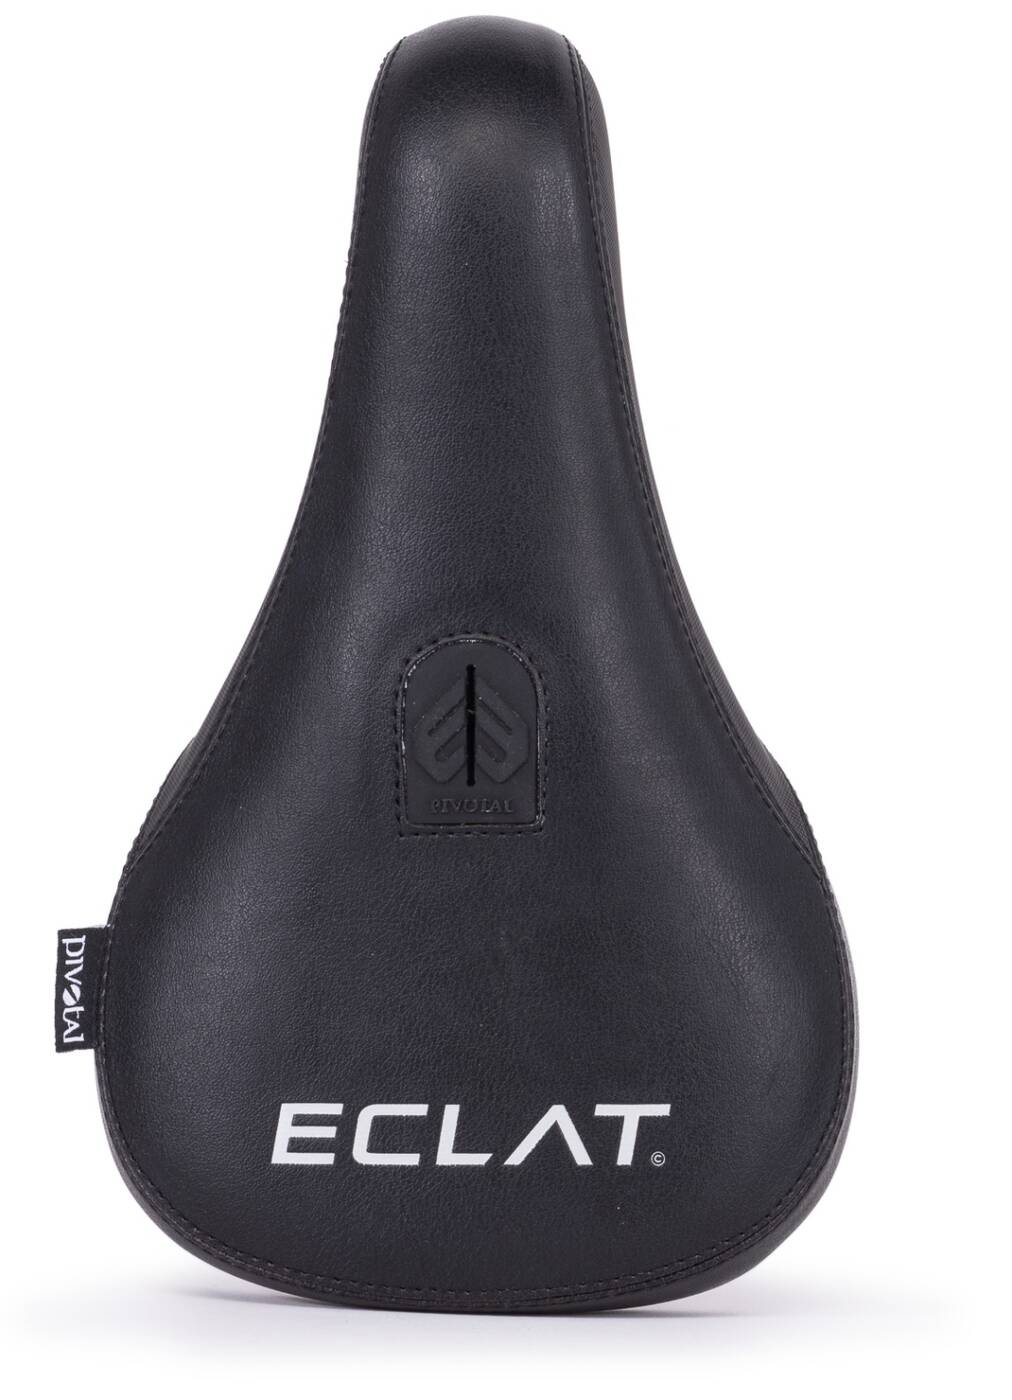 Eclat Bios Fat V2 Pivotal Bmx Sadel (Technical Black) -  Wallride